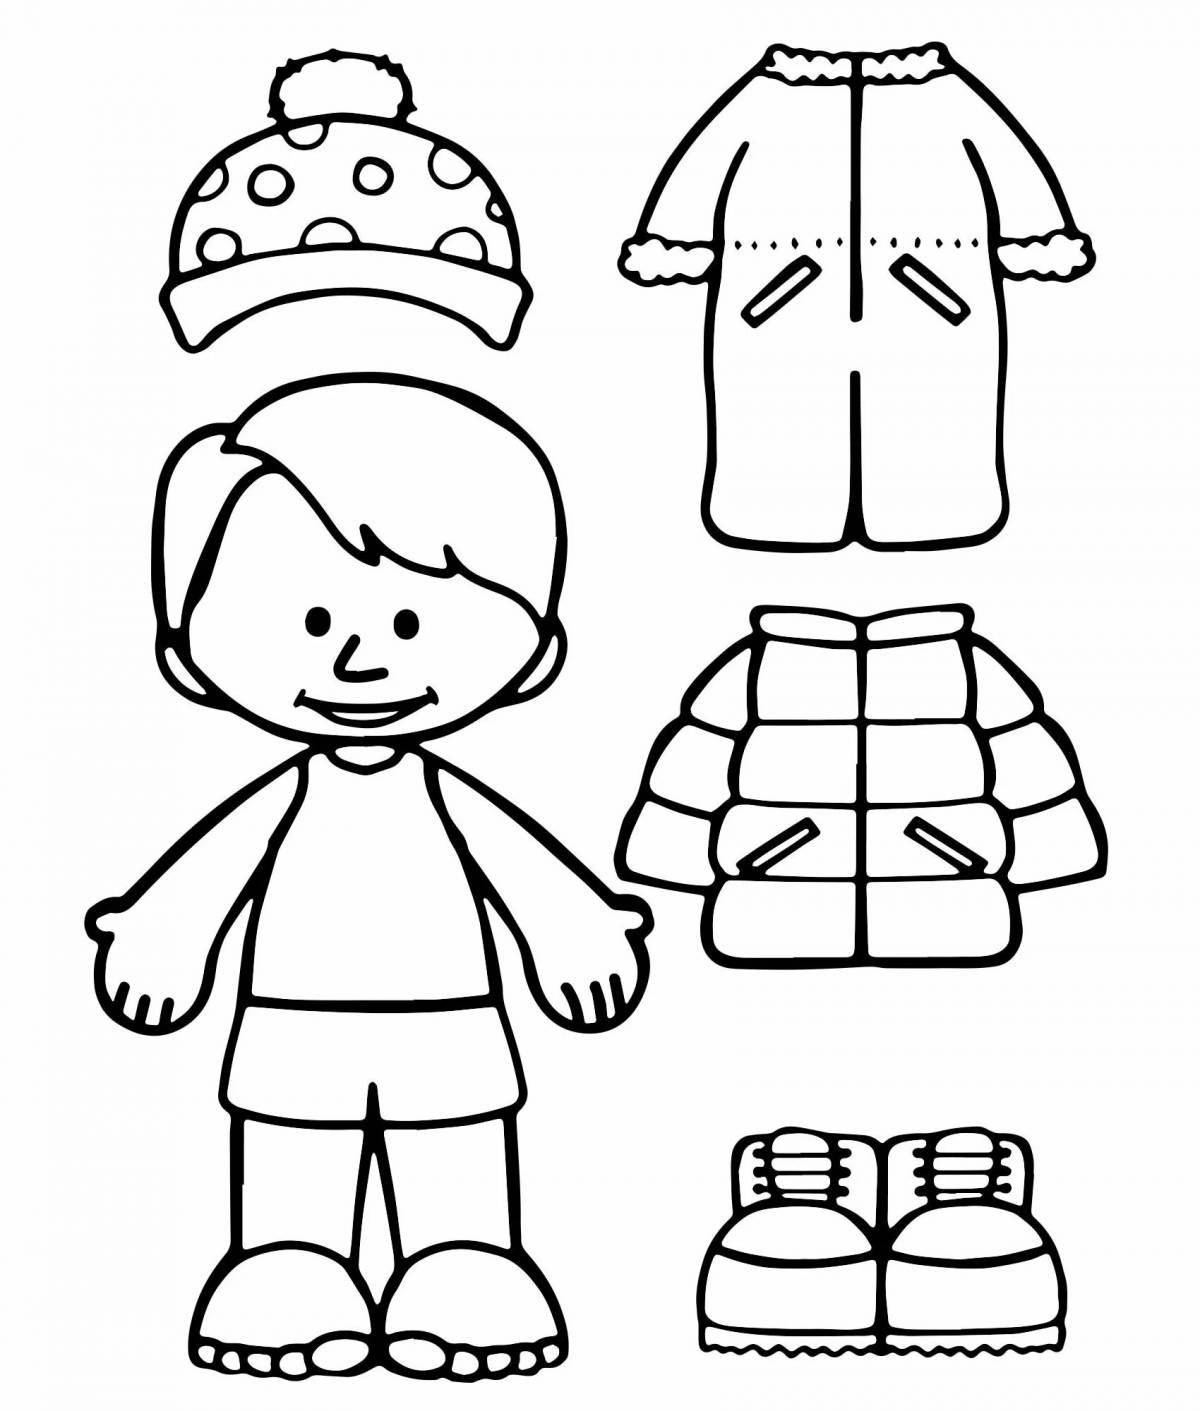 Живая раскраска зимней одежды для детей 6-7 лет